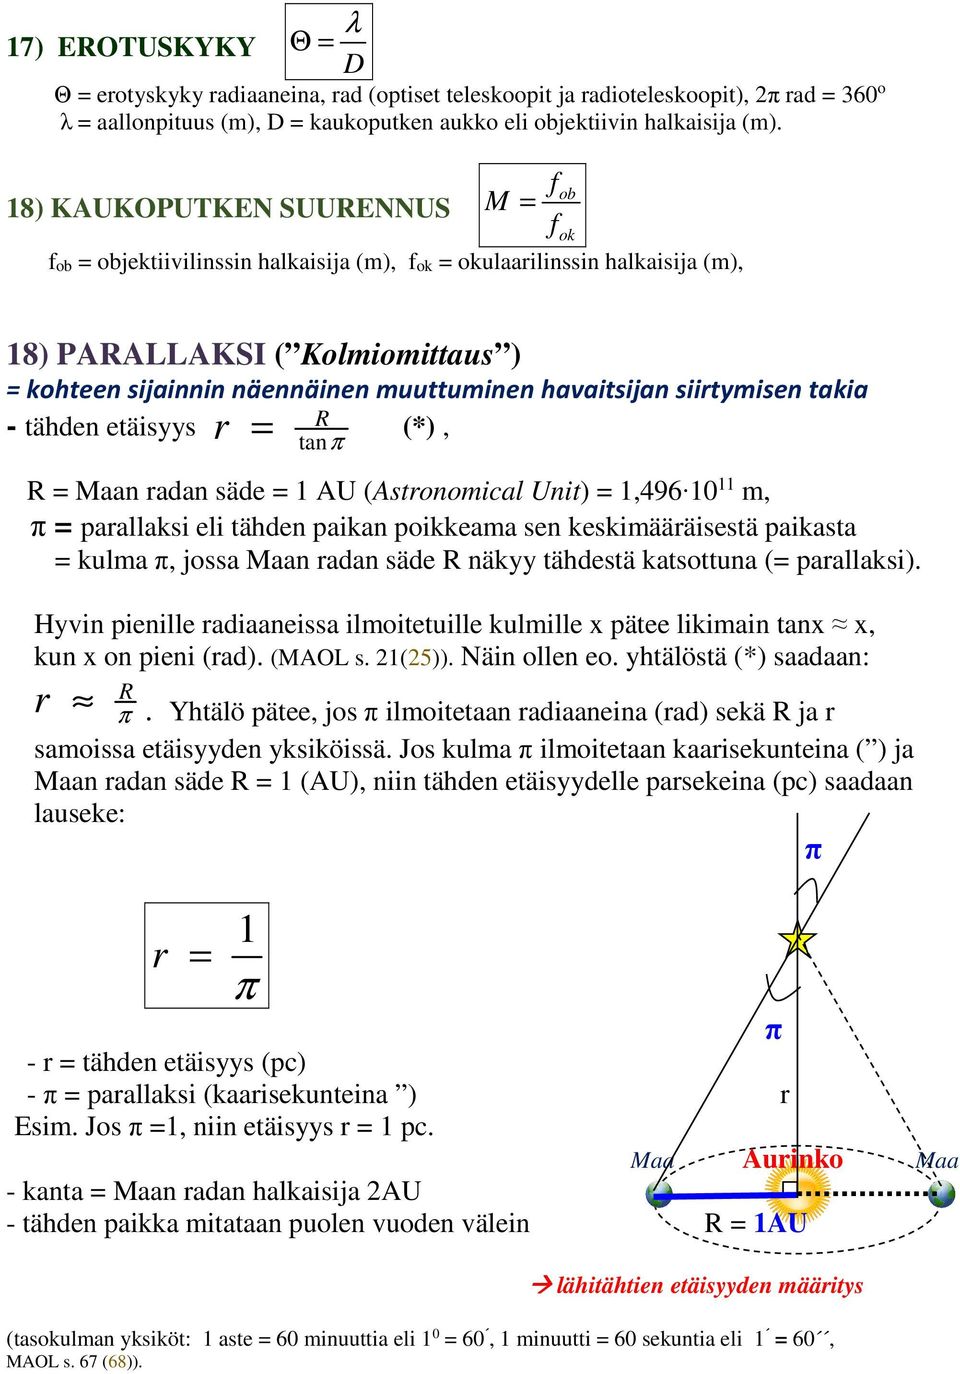 tähden etäisyys (*), R tanπ R Maan adan säde AU (Astnmical Unit),496 0 m, π paallaksi eli tähden paikan pikkeama sen keskimäääisestä paikasta kulma π, jssa Maan adan säde R näkyy tähdestä katsttuna (